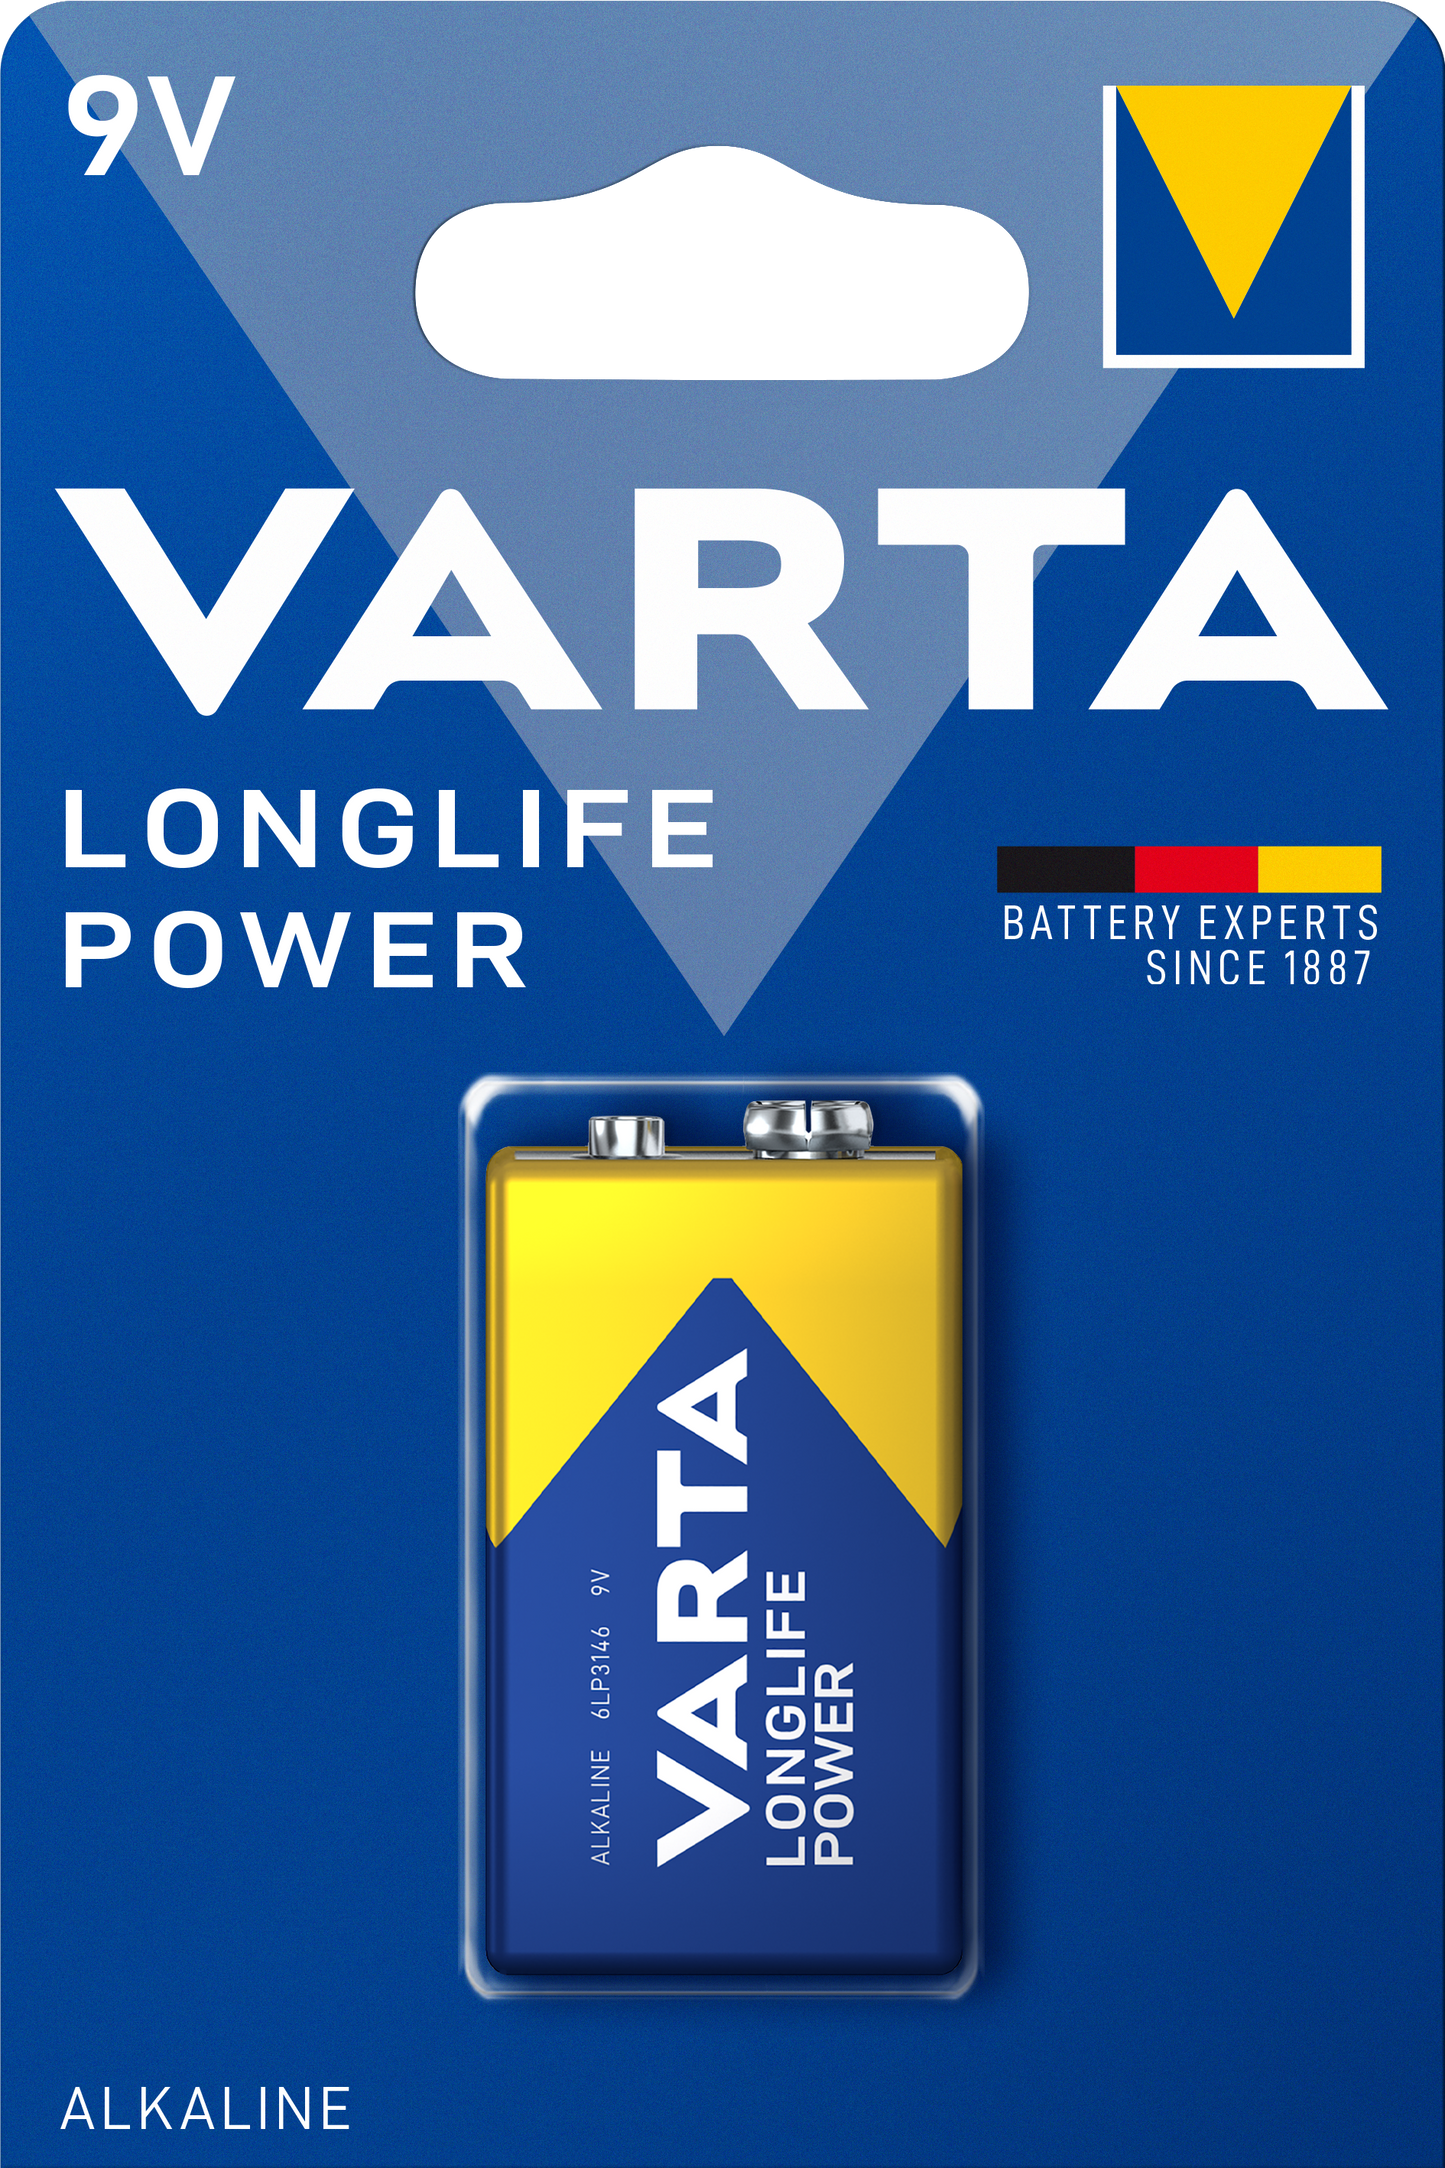 VARTA - Alkaline - Longlife Power - 9V